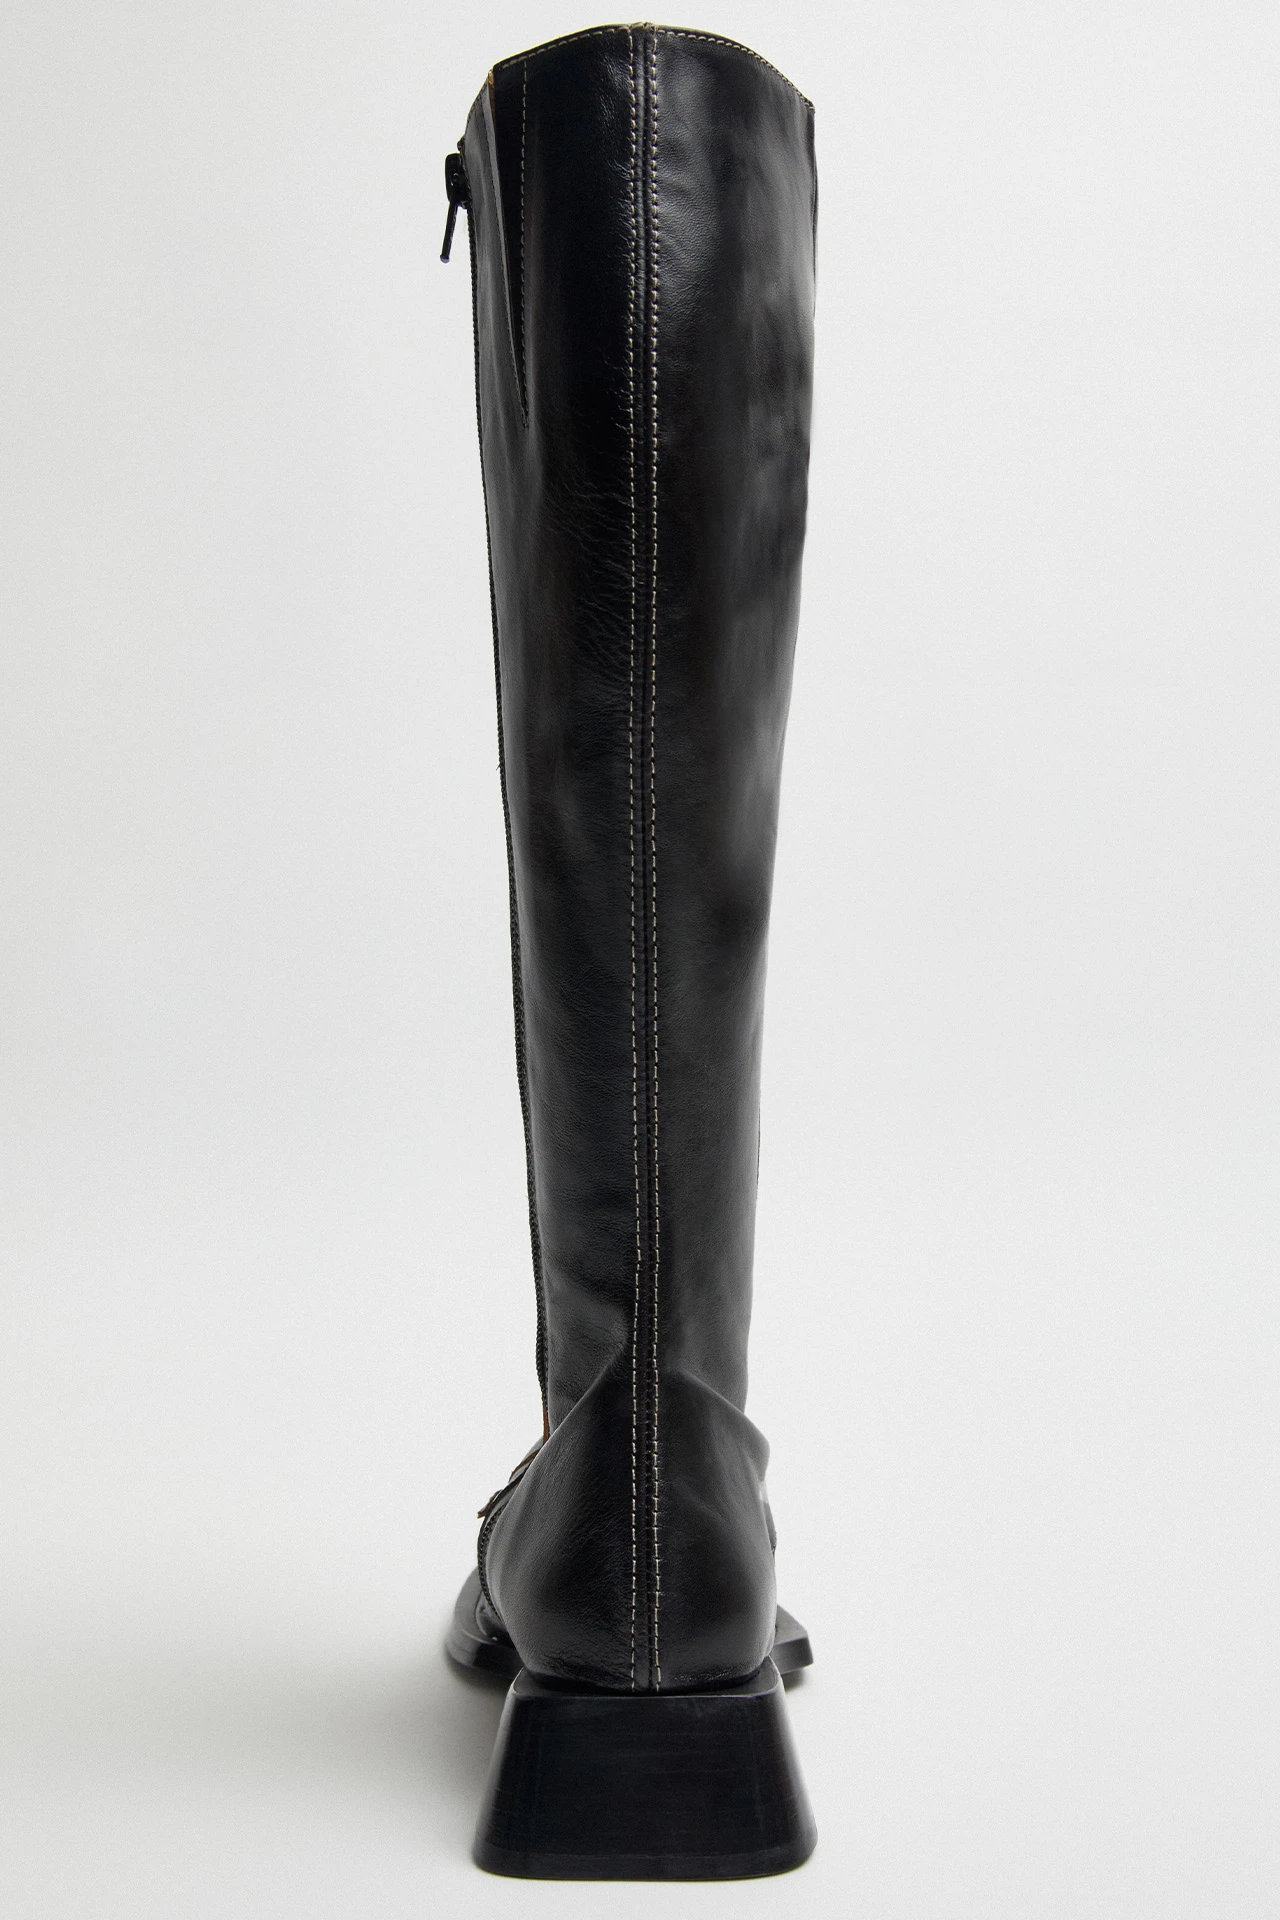 Miista-pats-black-tall-boots-05